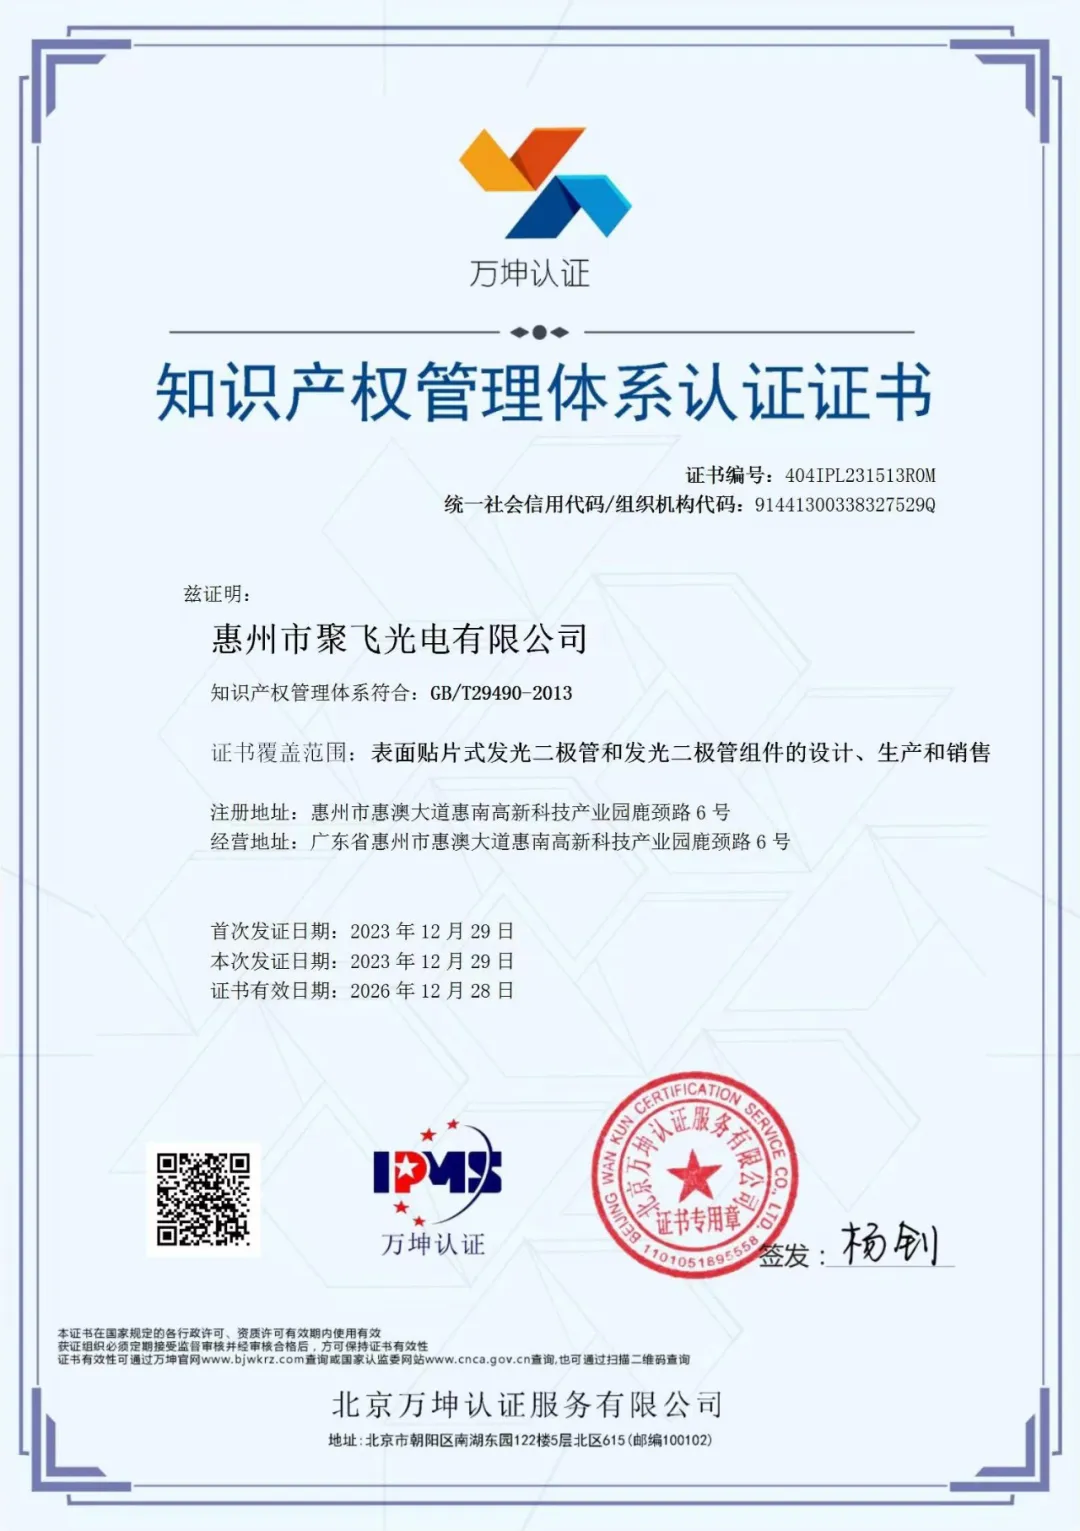 惠州太阳网集团tcy8722光电通过企业知识产权管理规范认证